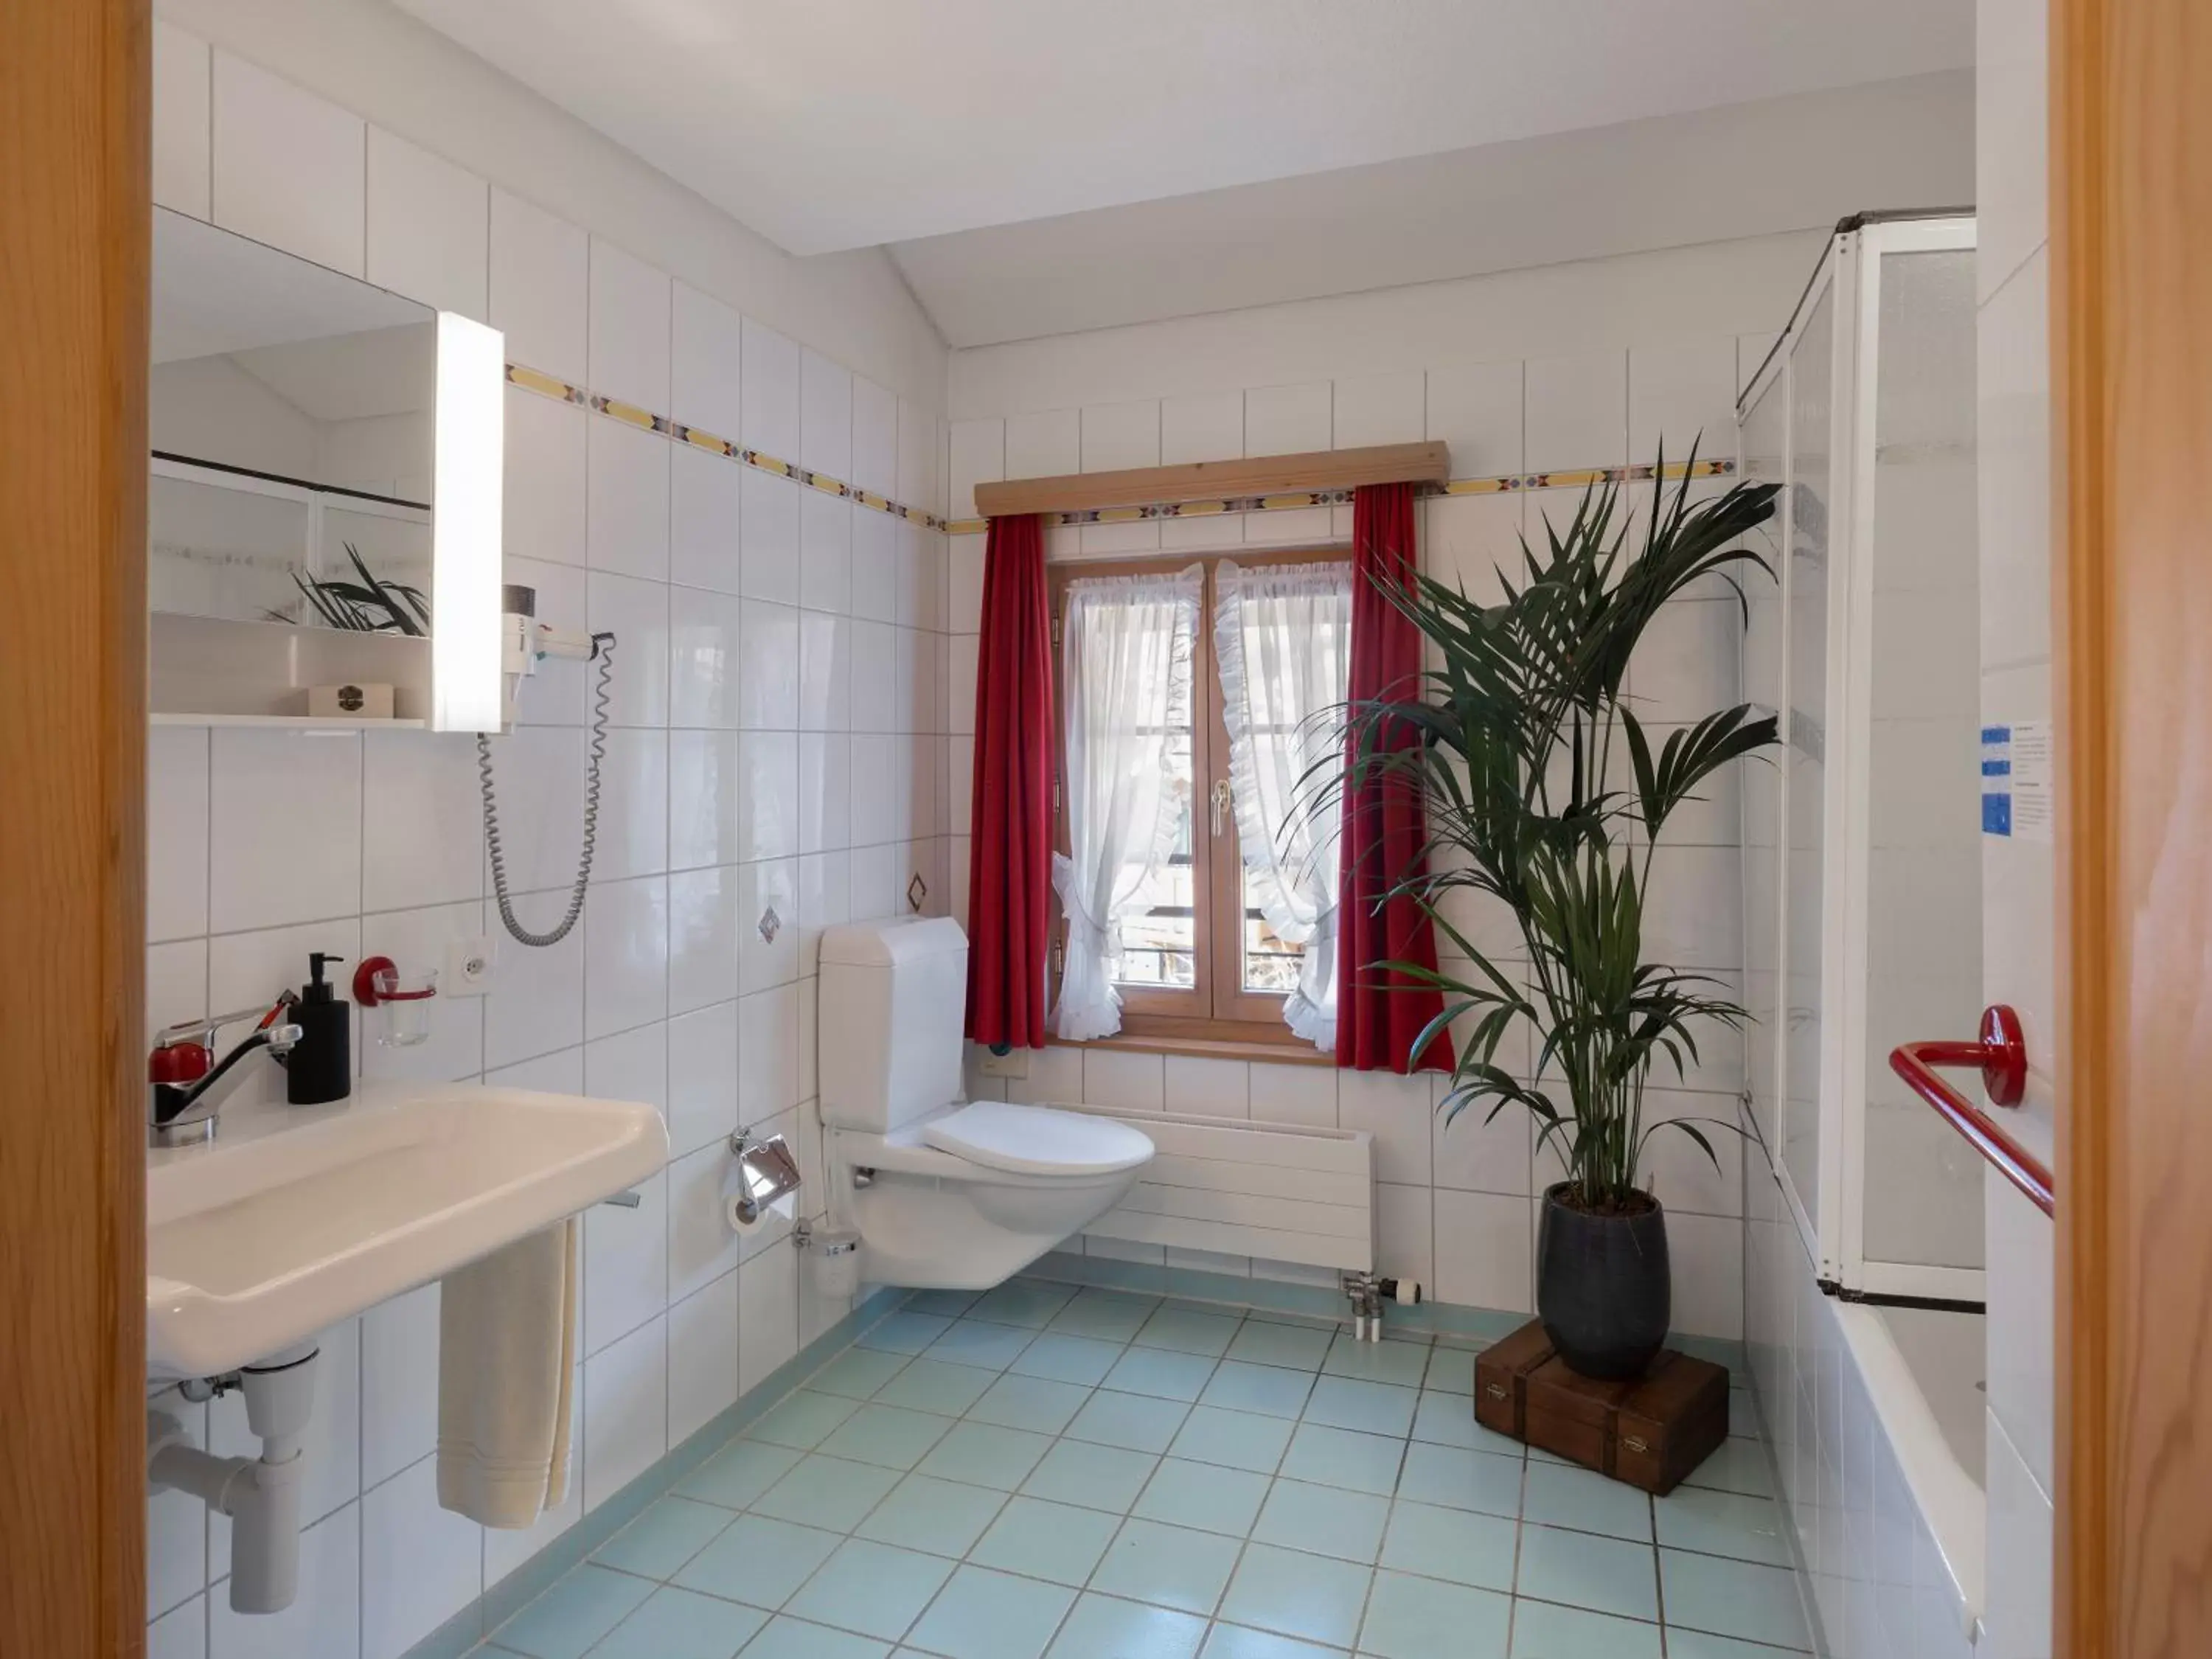 Bathroom in Hotel de Commune